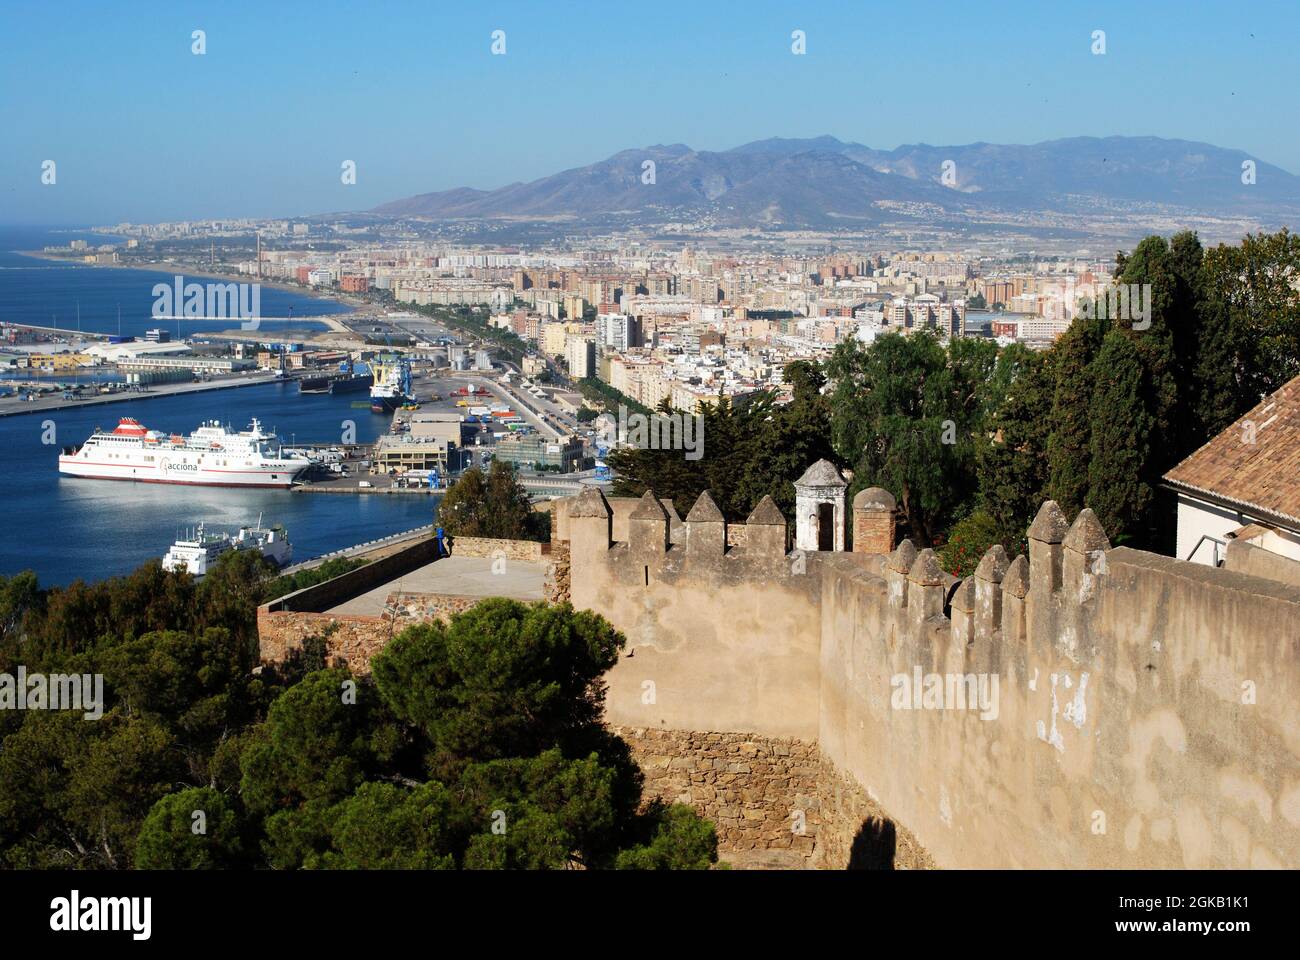 Mura del castello di Gibralfaro con vista sulla città e sul porto, Malaga, Provincia di Malaga, Andalusia, Spagna, Europa occidentale. Foto Stock